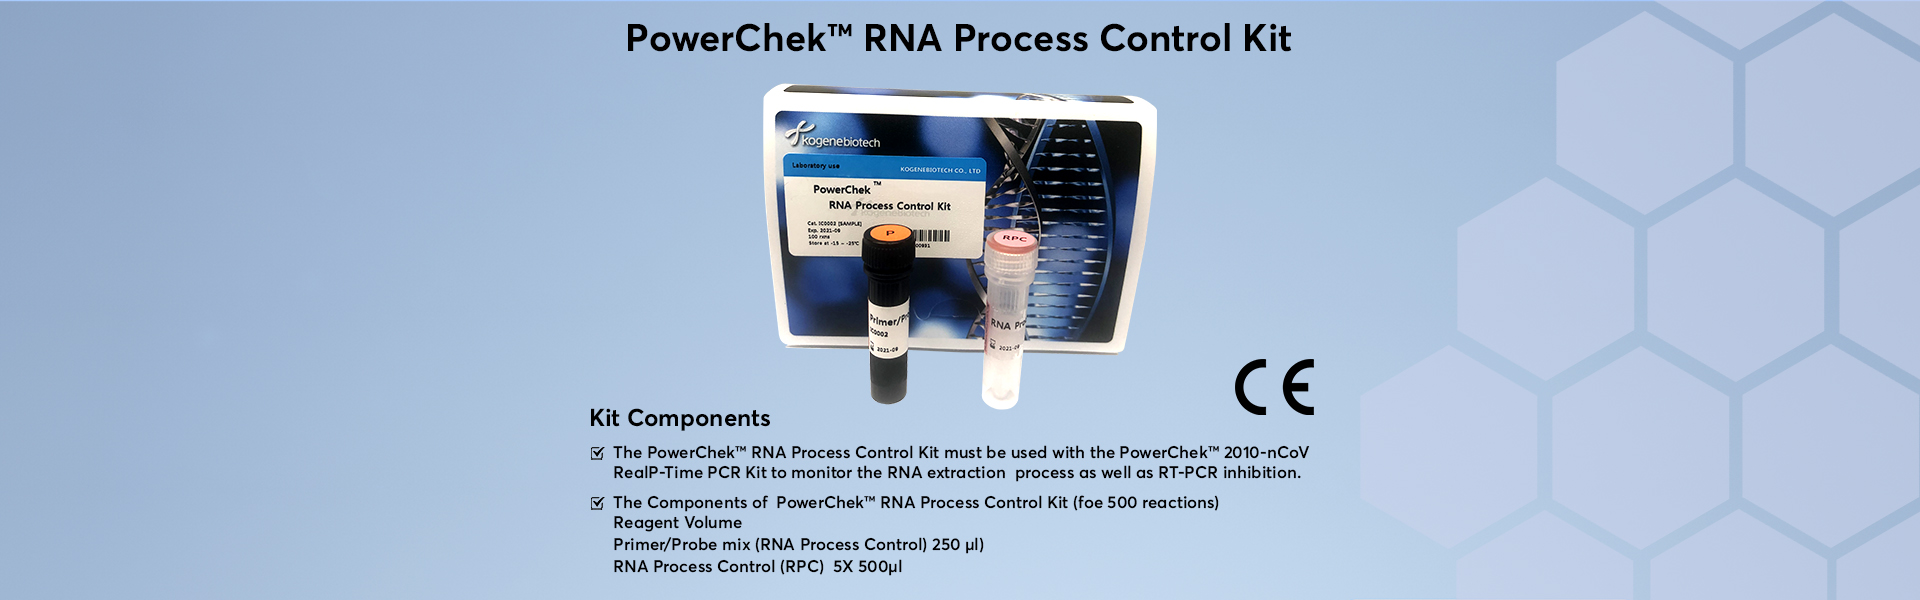 PowerChek RNA Process Control Kit_13_01_2021